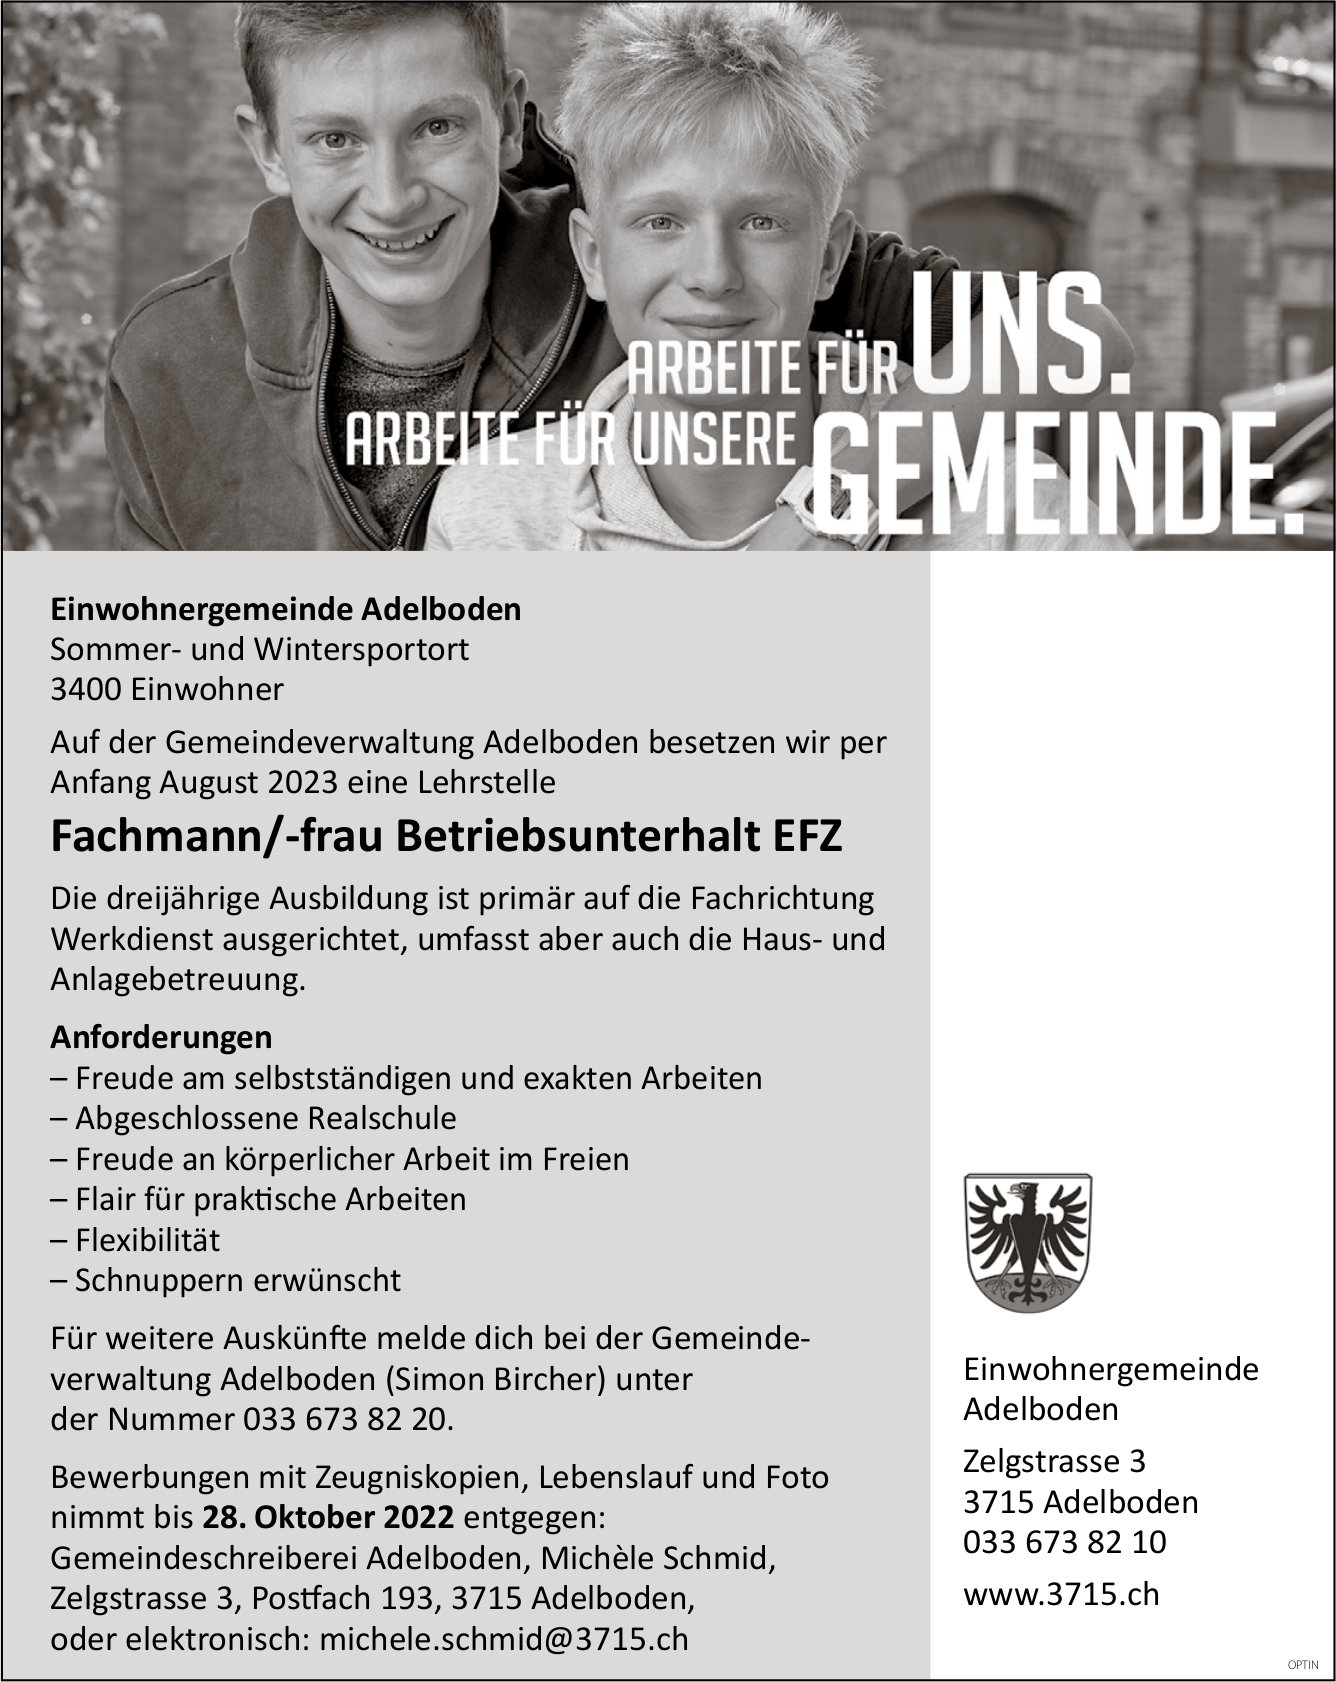 Lehrstelle als Fachmann/-frau Betriebsunterhalt EFZ, Gemeinde, Adelboden, zu vergeben